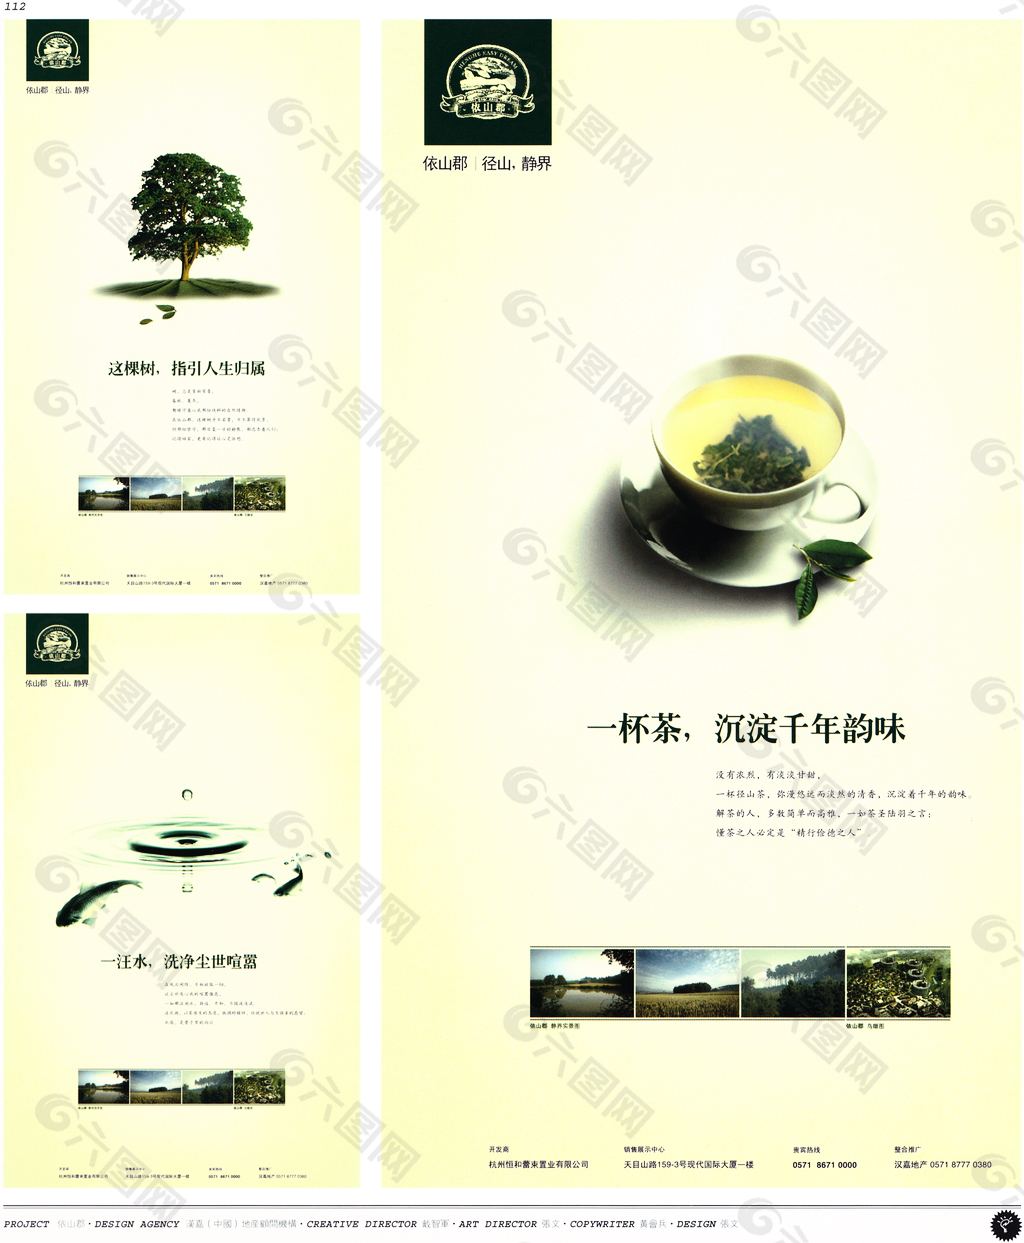 中国房地产广告年鉴 第一册 创意设计_0109